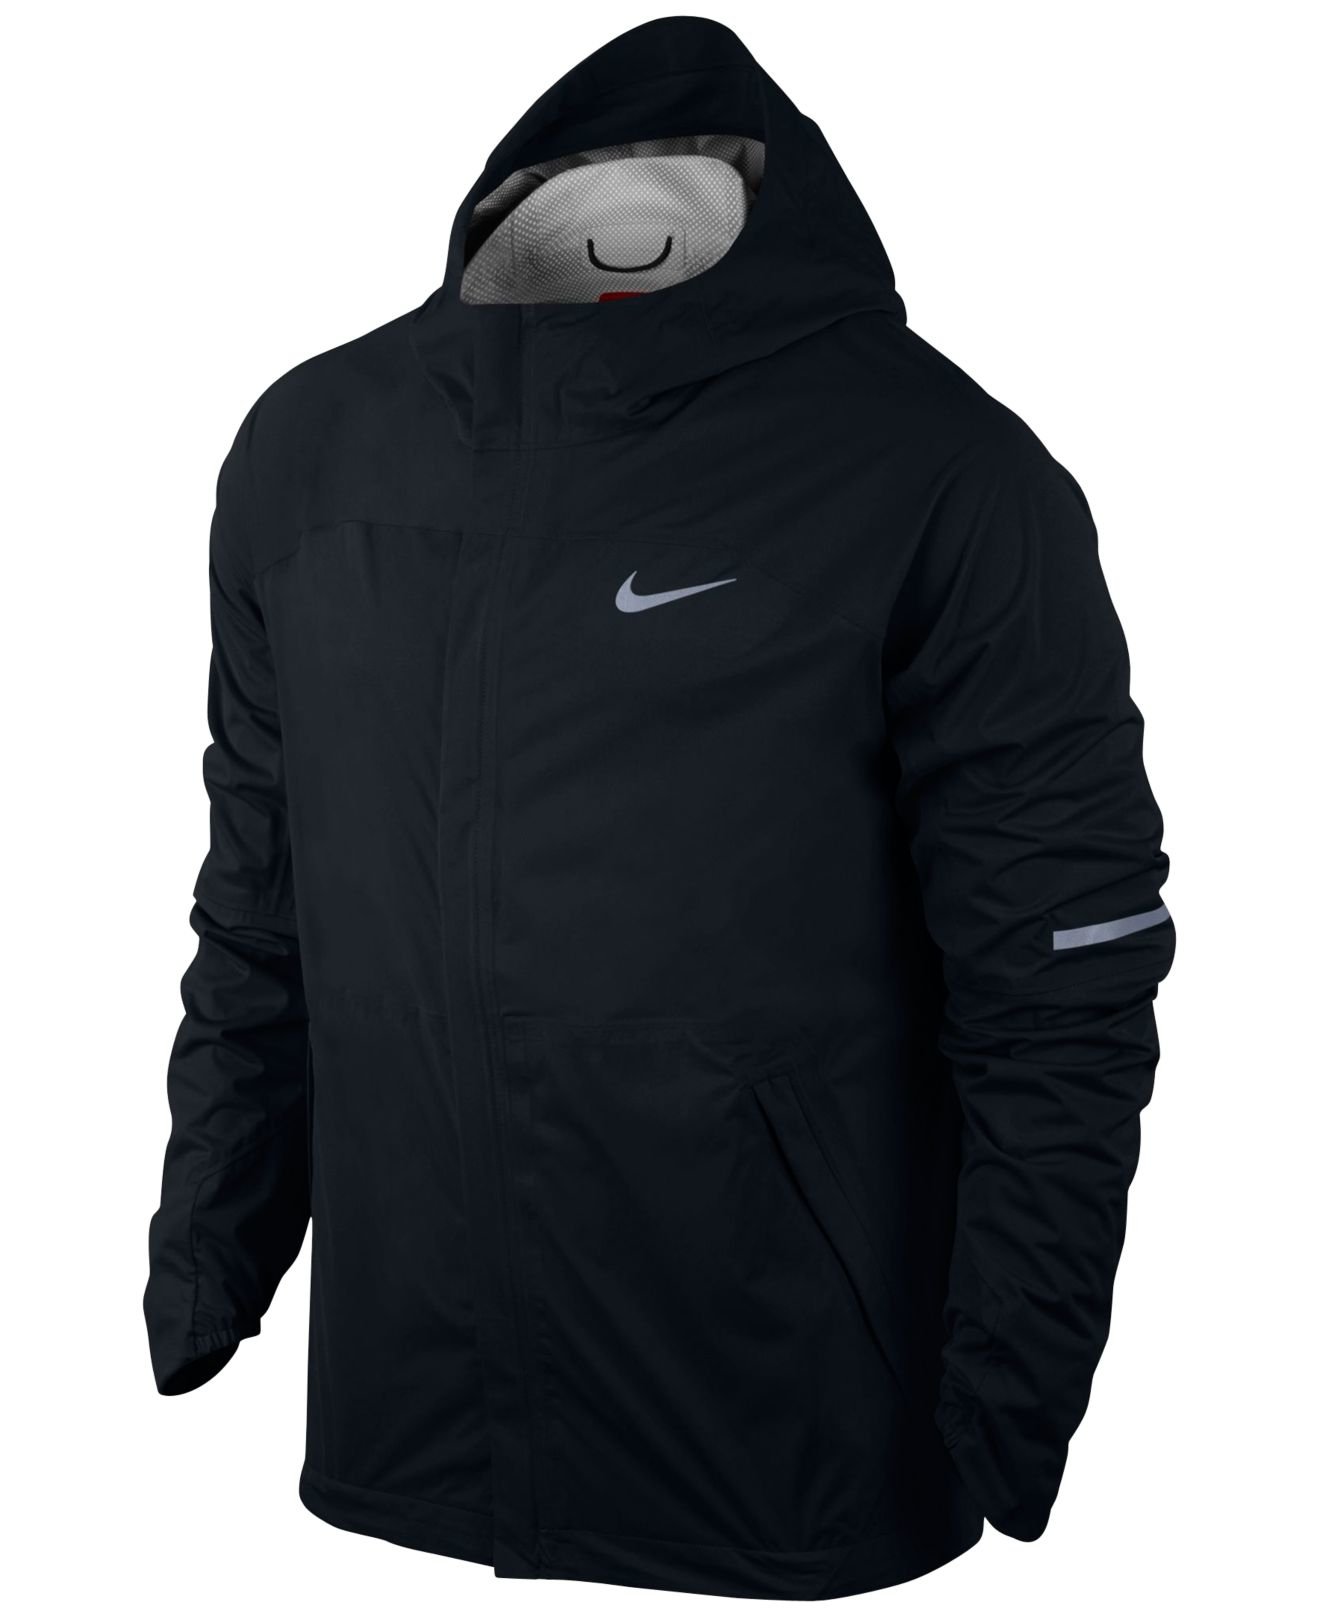 Lyst - Nike Men's Shieldrunner Storm-fit Jacket in Black for Men